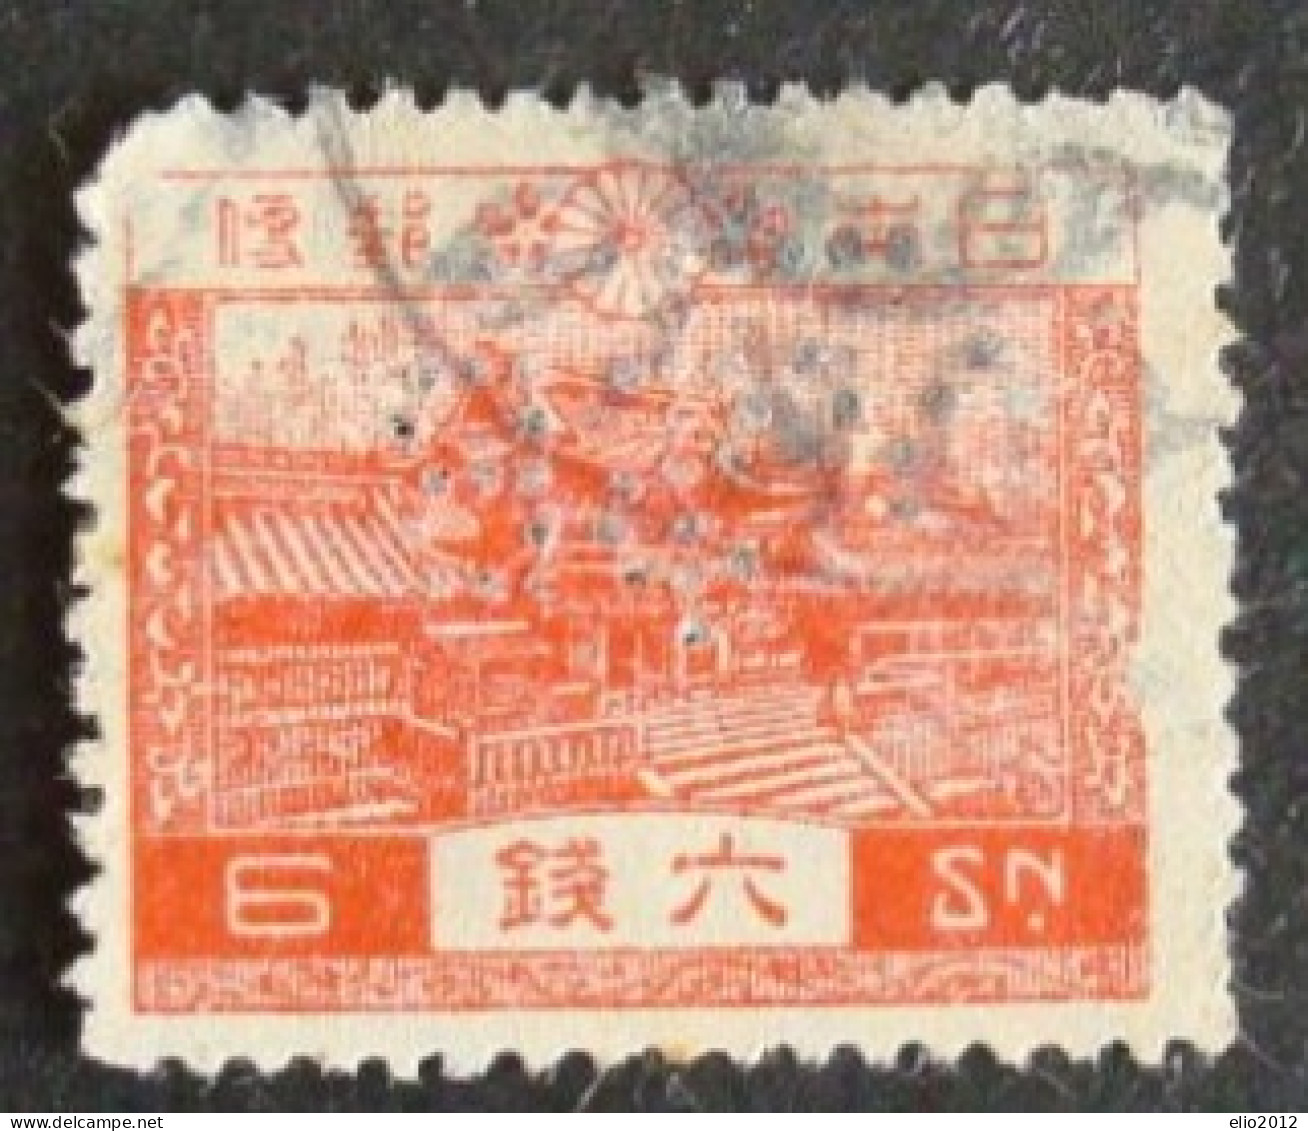 Perfin Francobollo Giappone - 1926 - 6 S - Usados